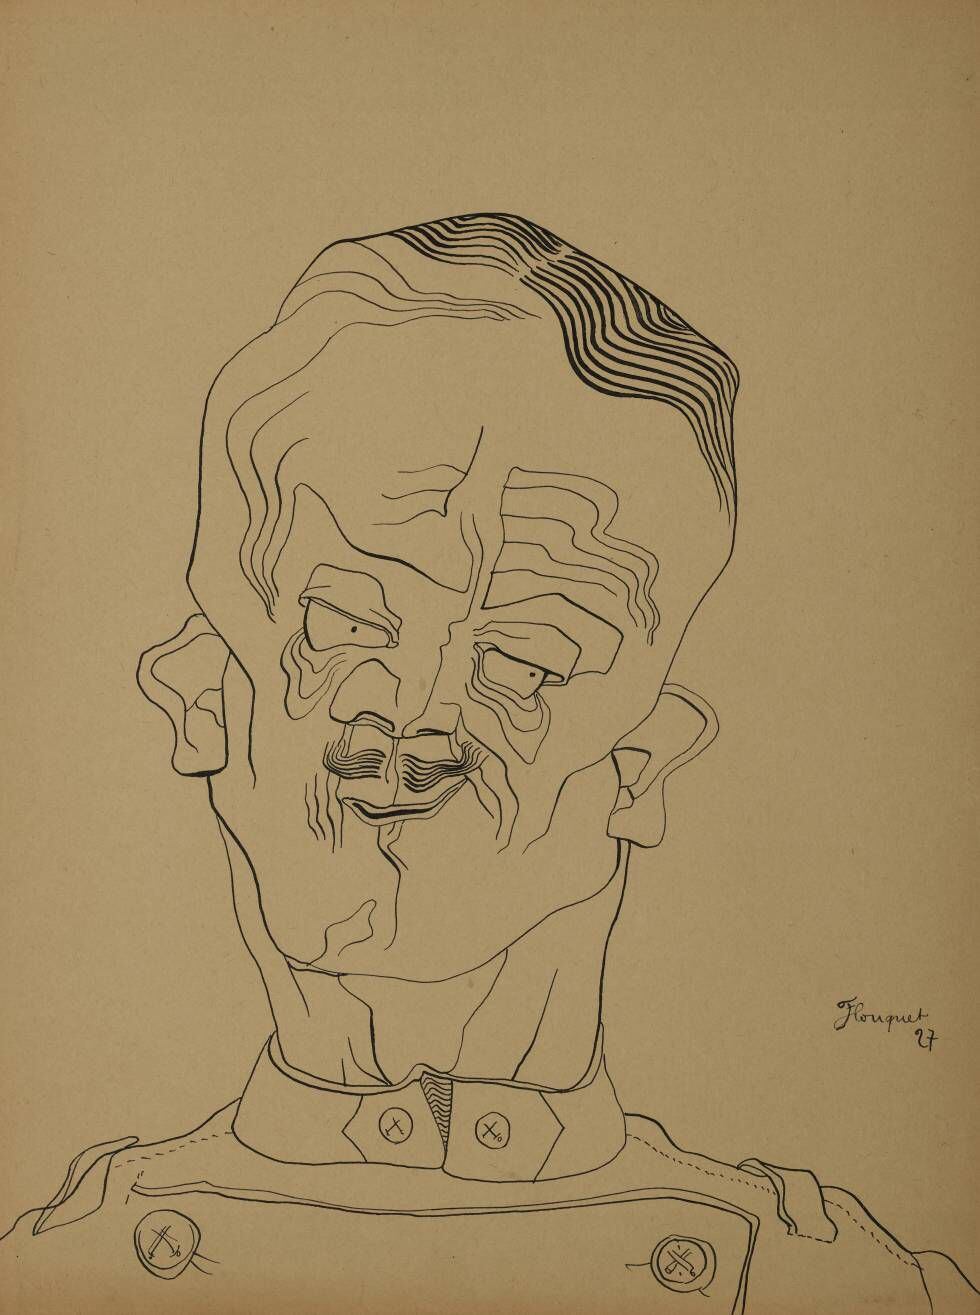 Flouquet dibujó este retrato imaginario en 1927. ¿Un retrato de Hitler 'avant la lettre'?